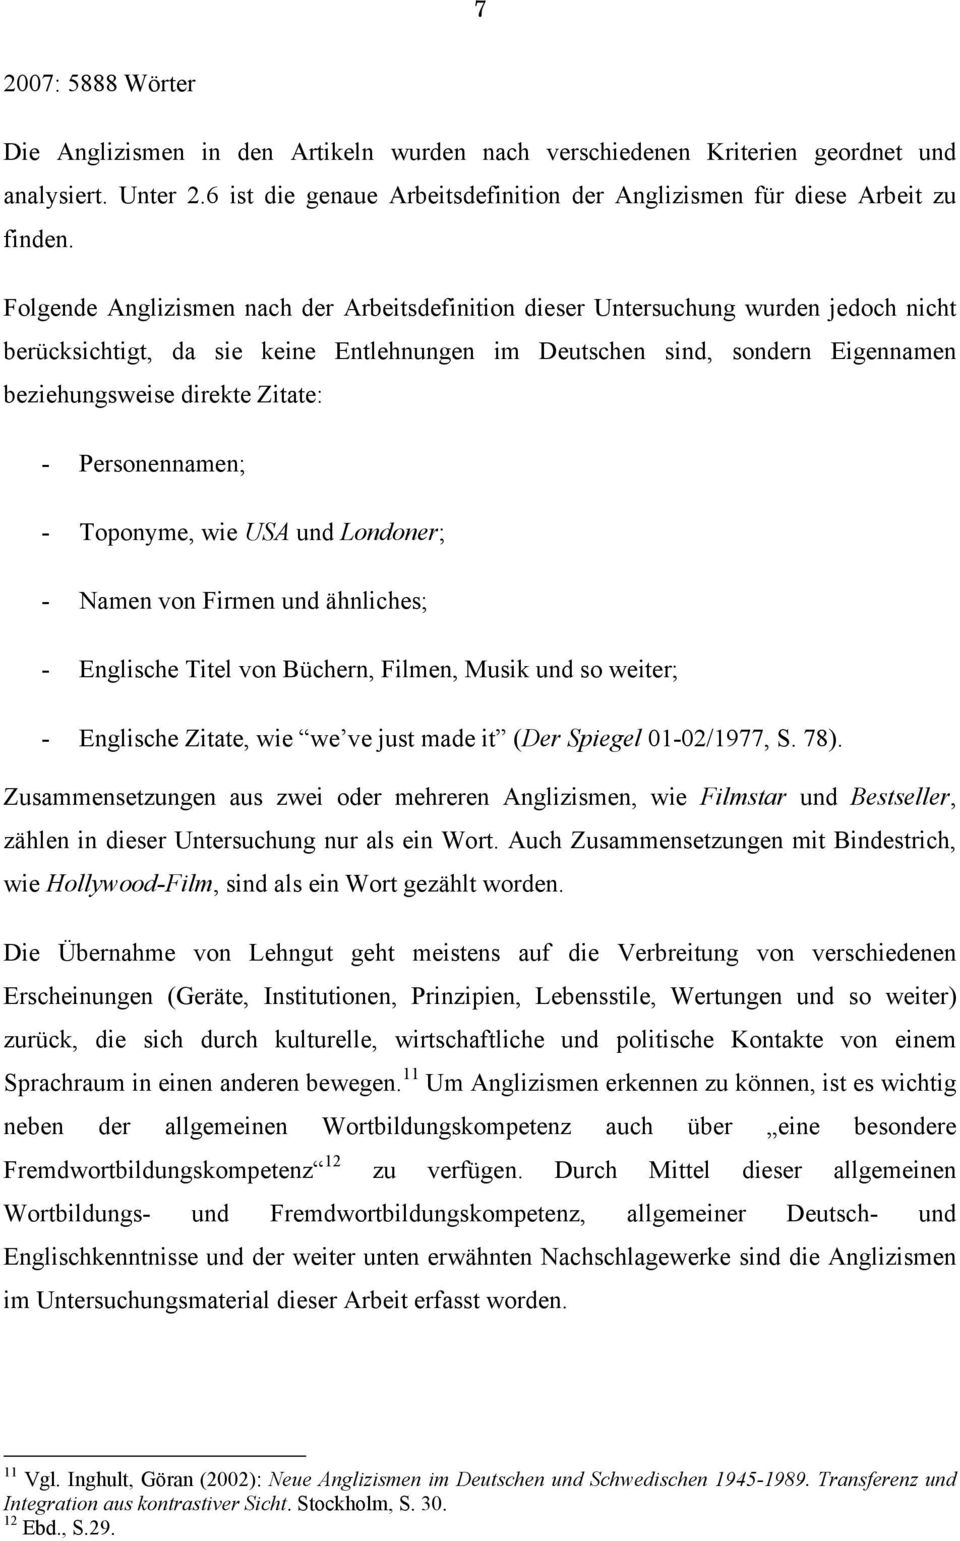 Anglizismen Im Deutschen Eine Untersuchung Des Nachrichtenmagazins